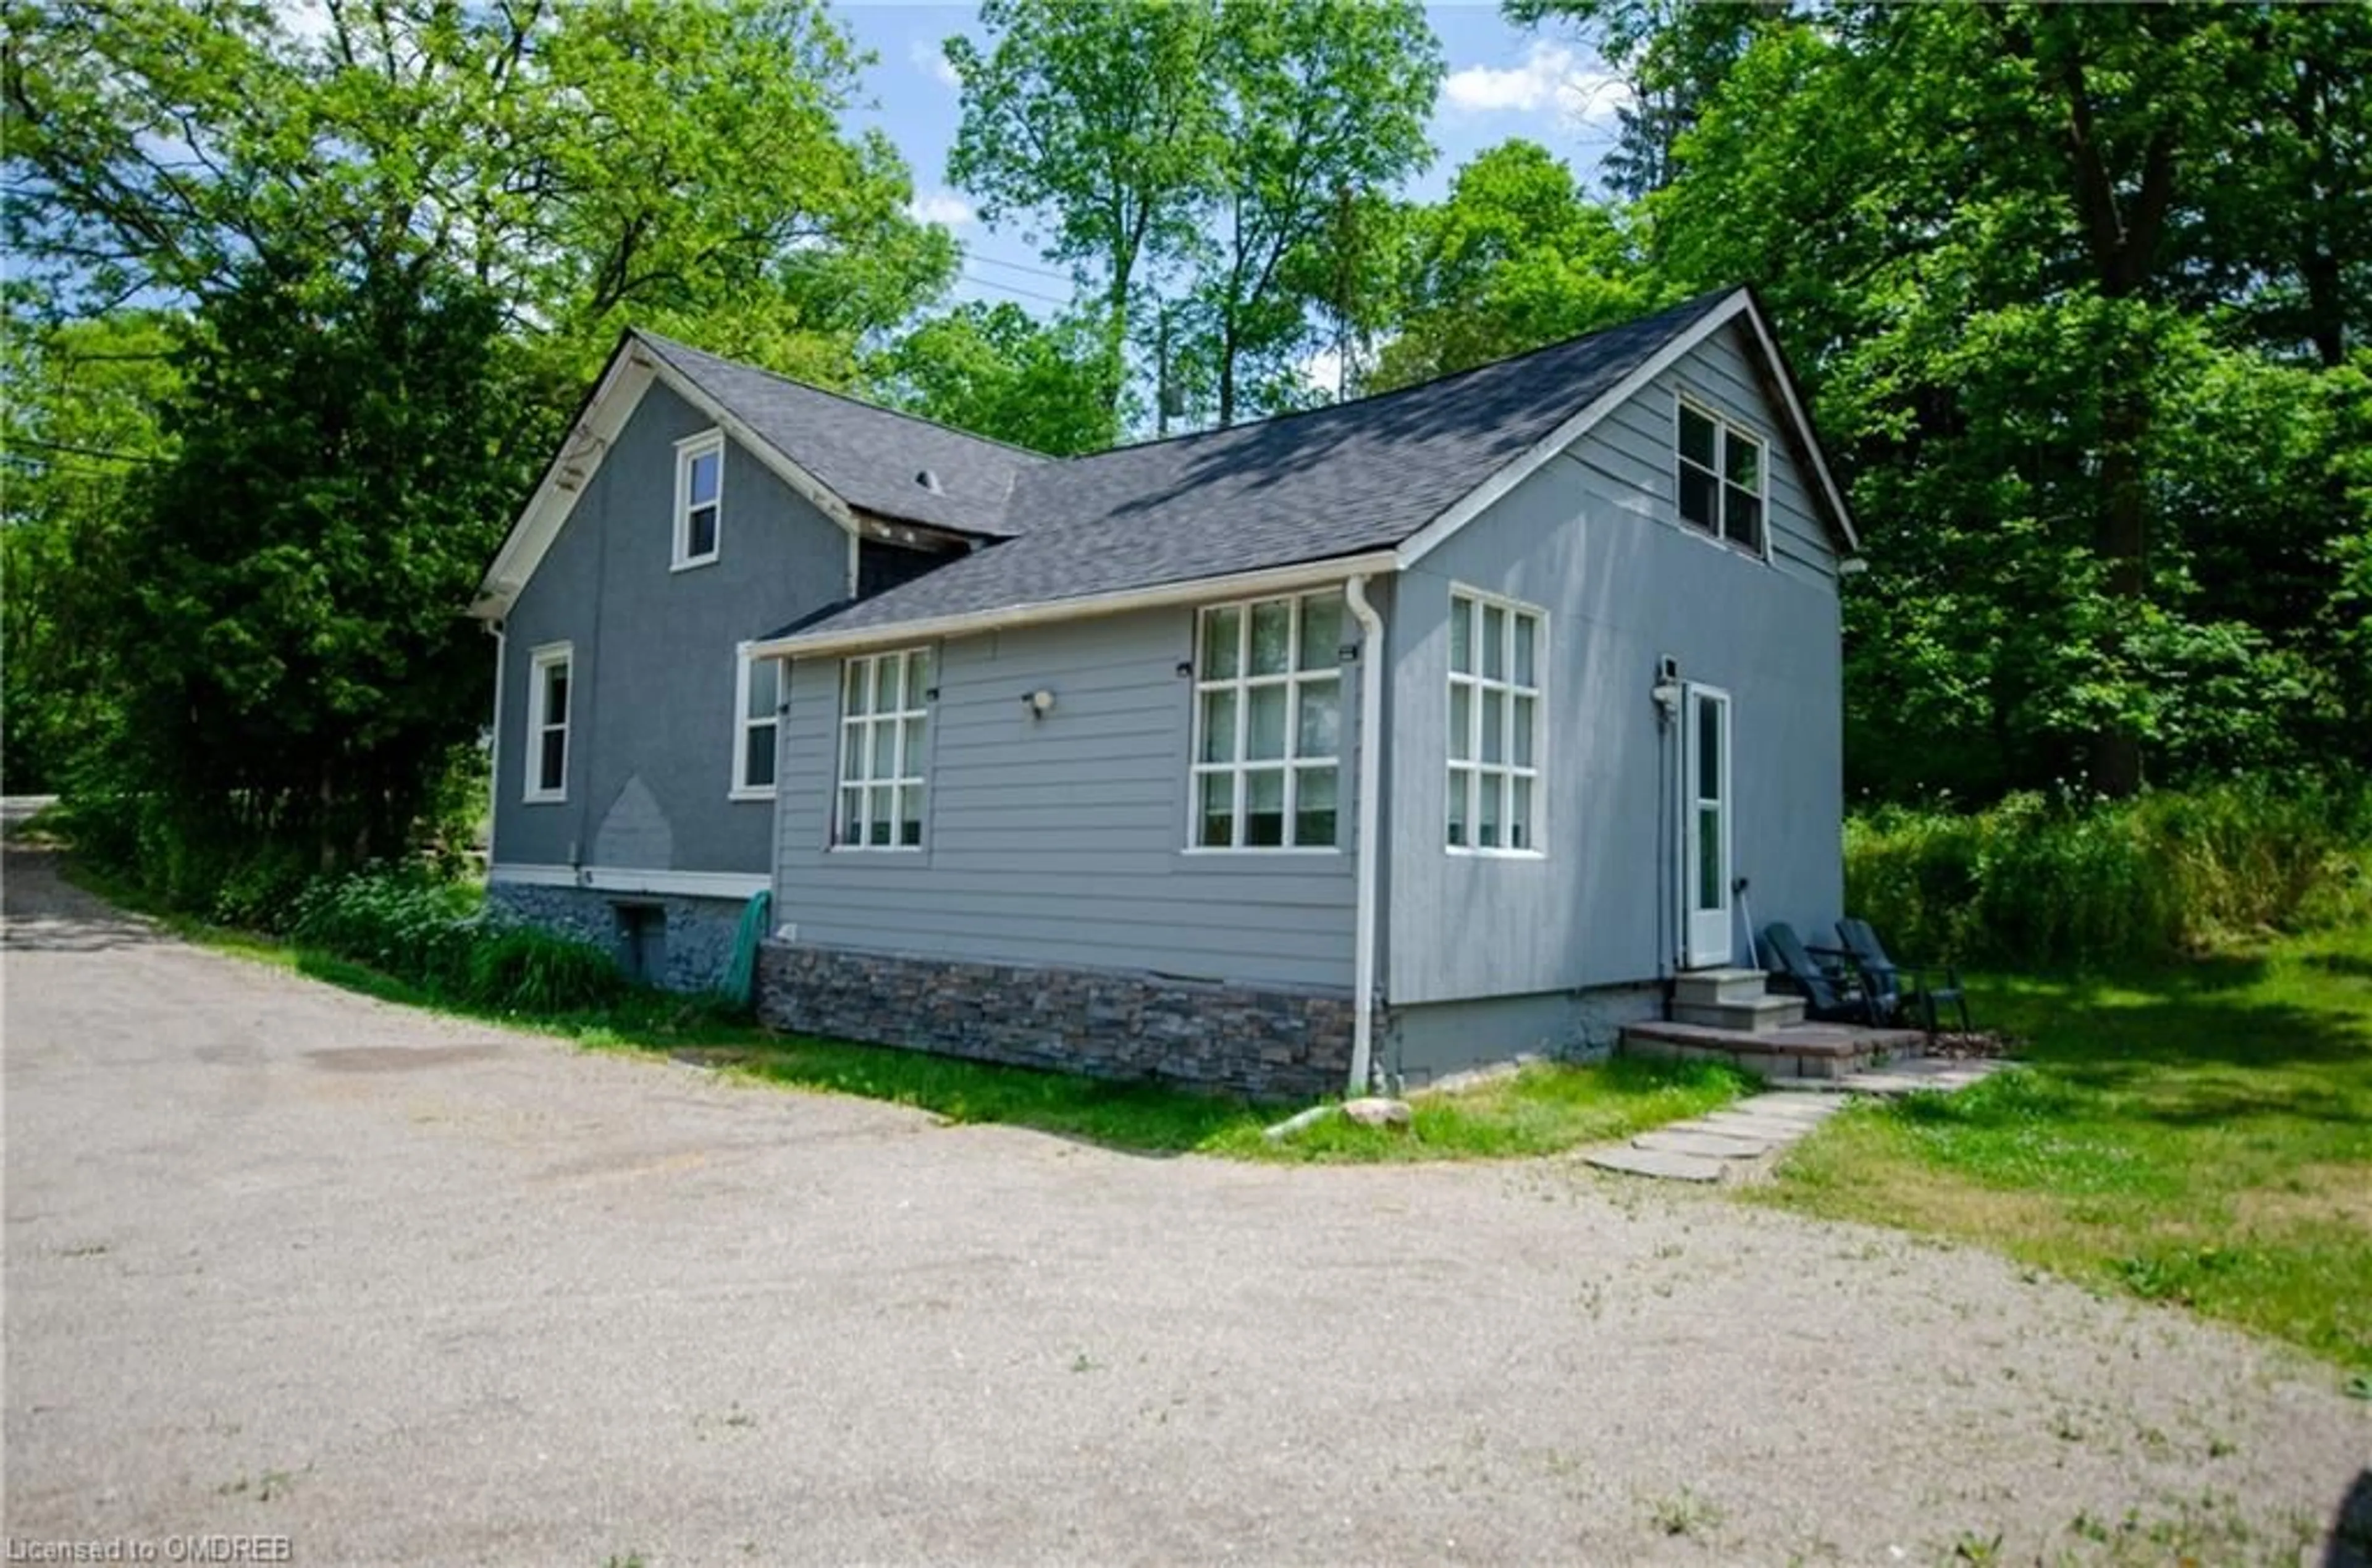 Cottage for 6142 Guelph Line, Burlington Ontario L7P 0A4